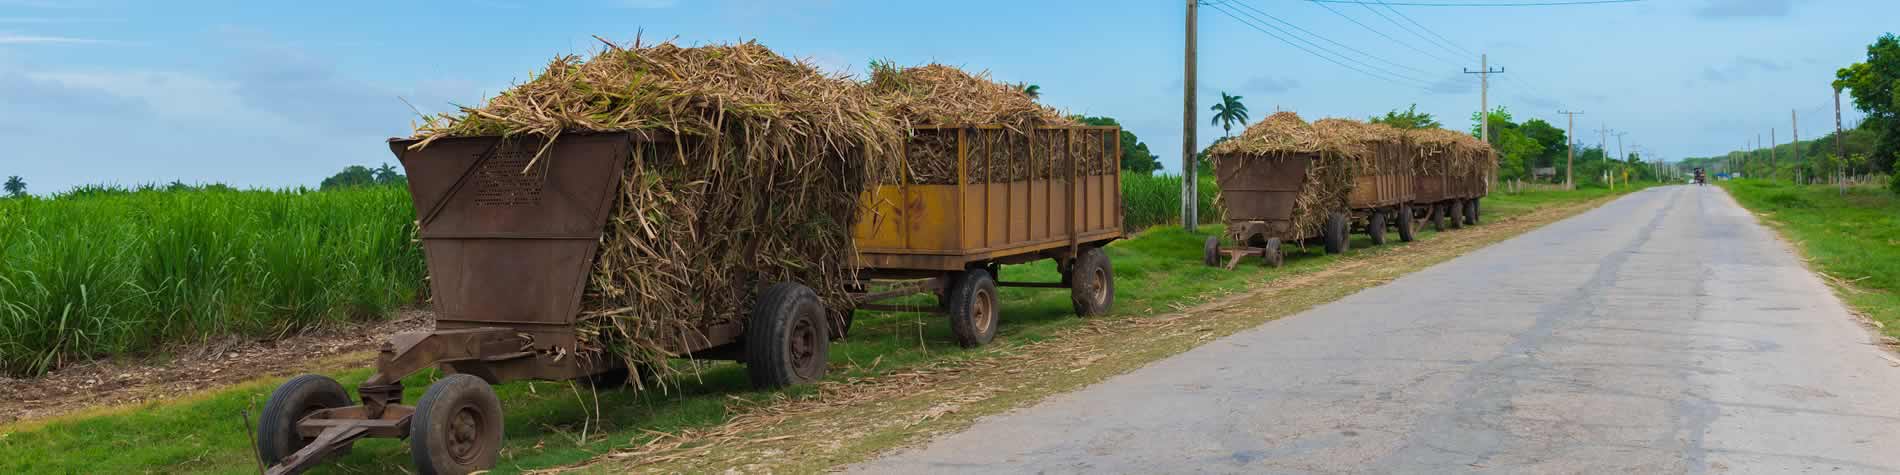 Sugar Cane wagons by teh road in Villa Clara